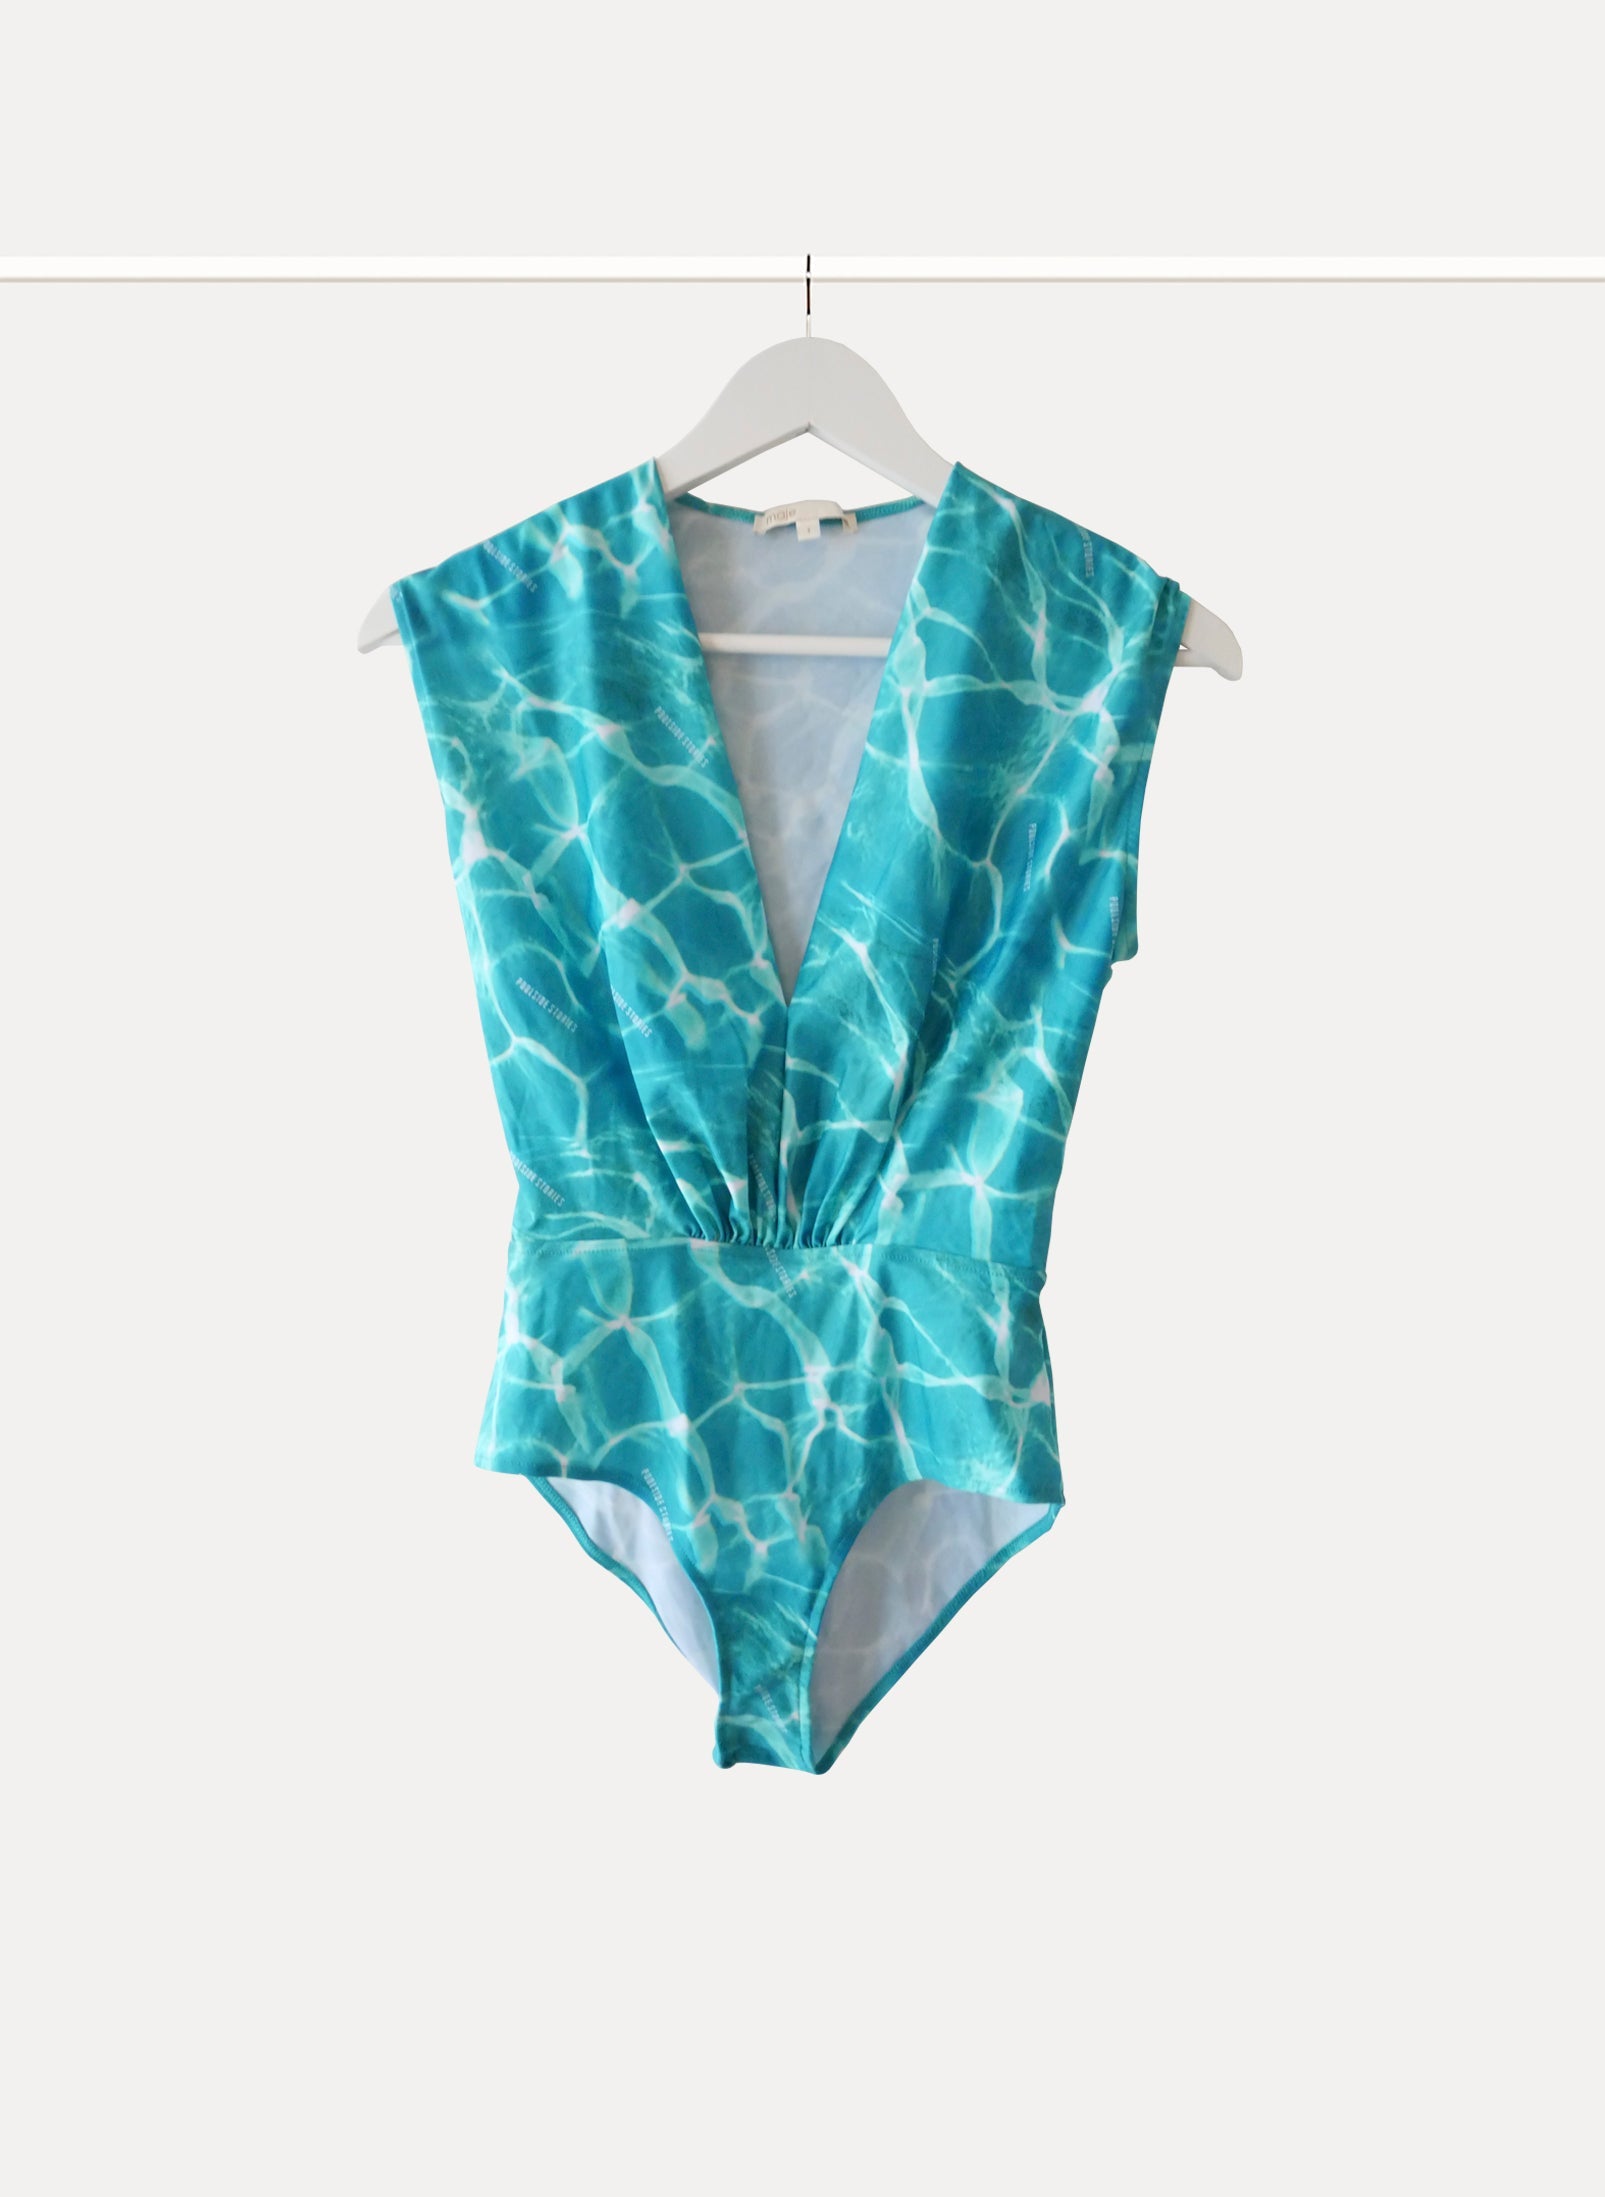 Louis Vuitton, Swim, Louis Vuitton Damier Bodysuit One Piece Swim Suit 36